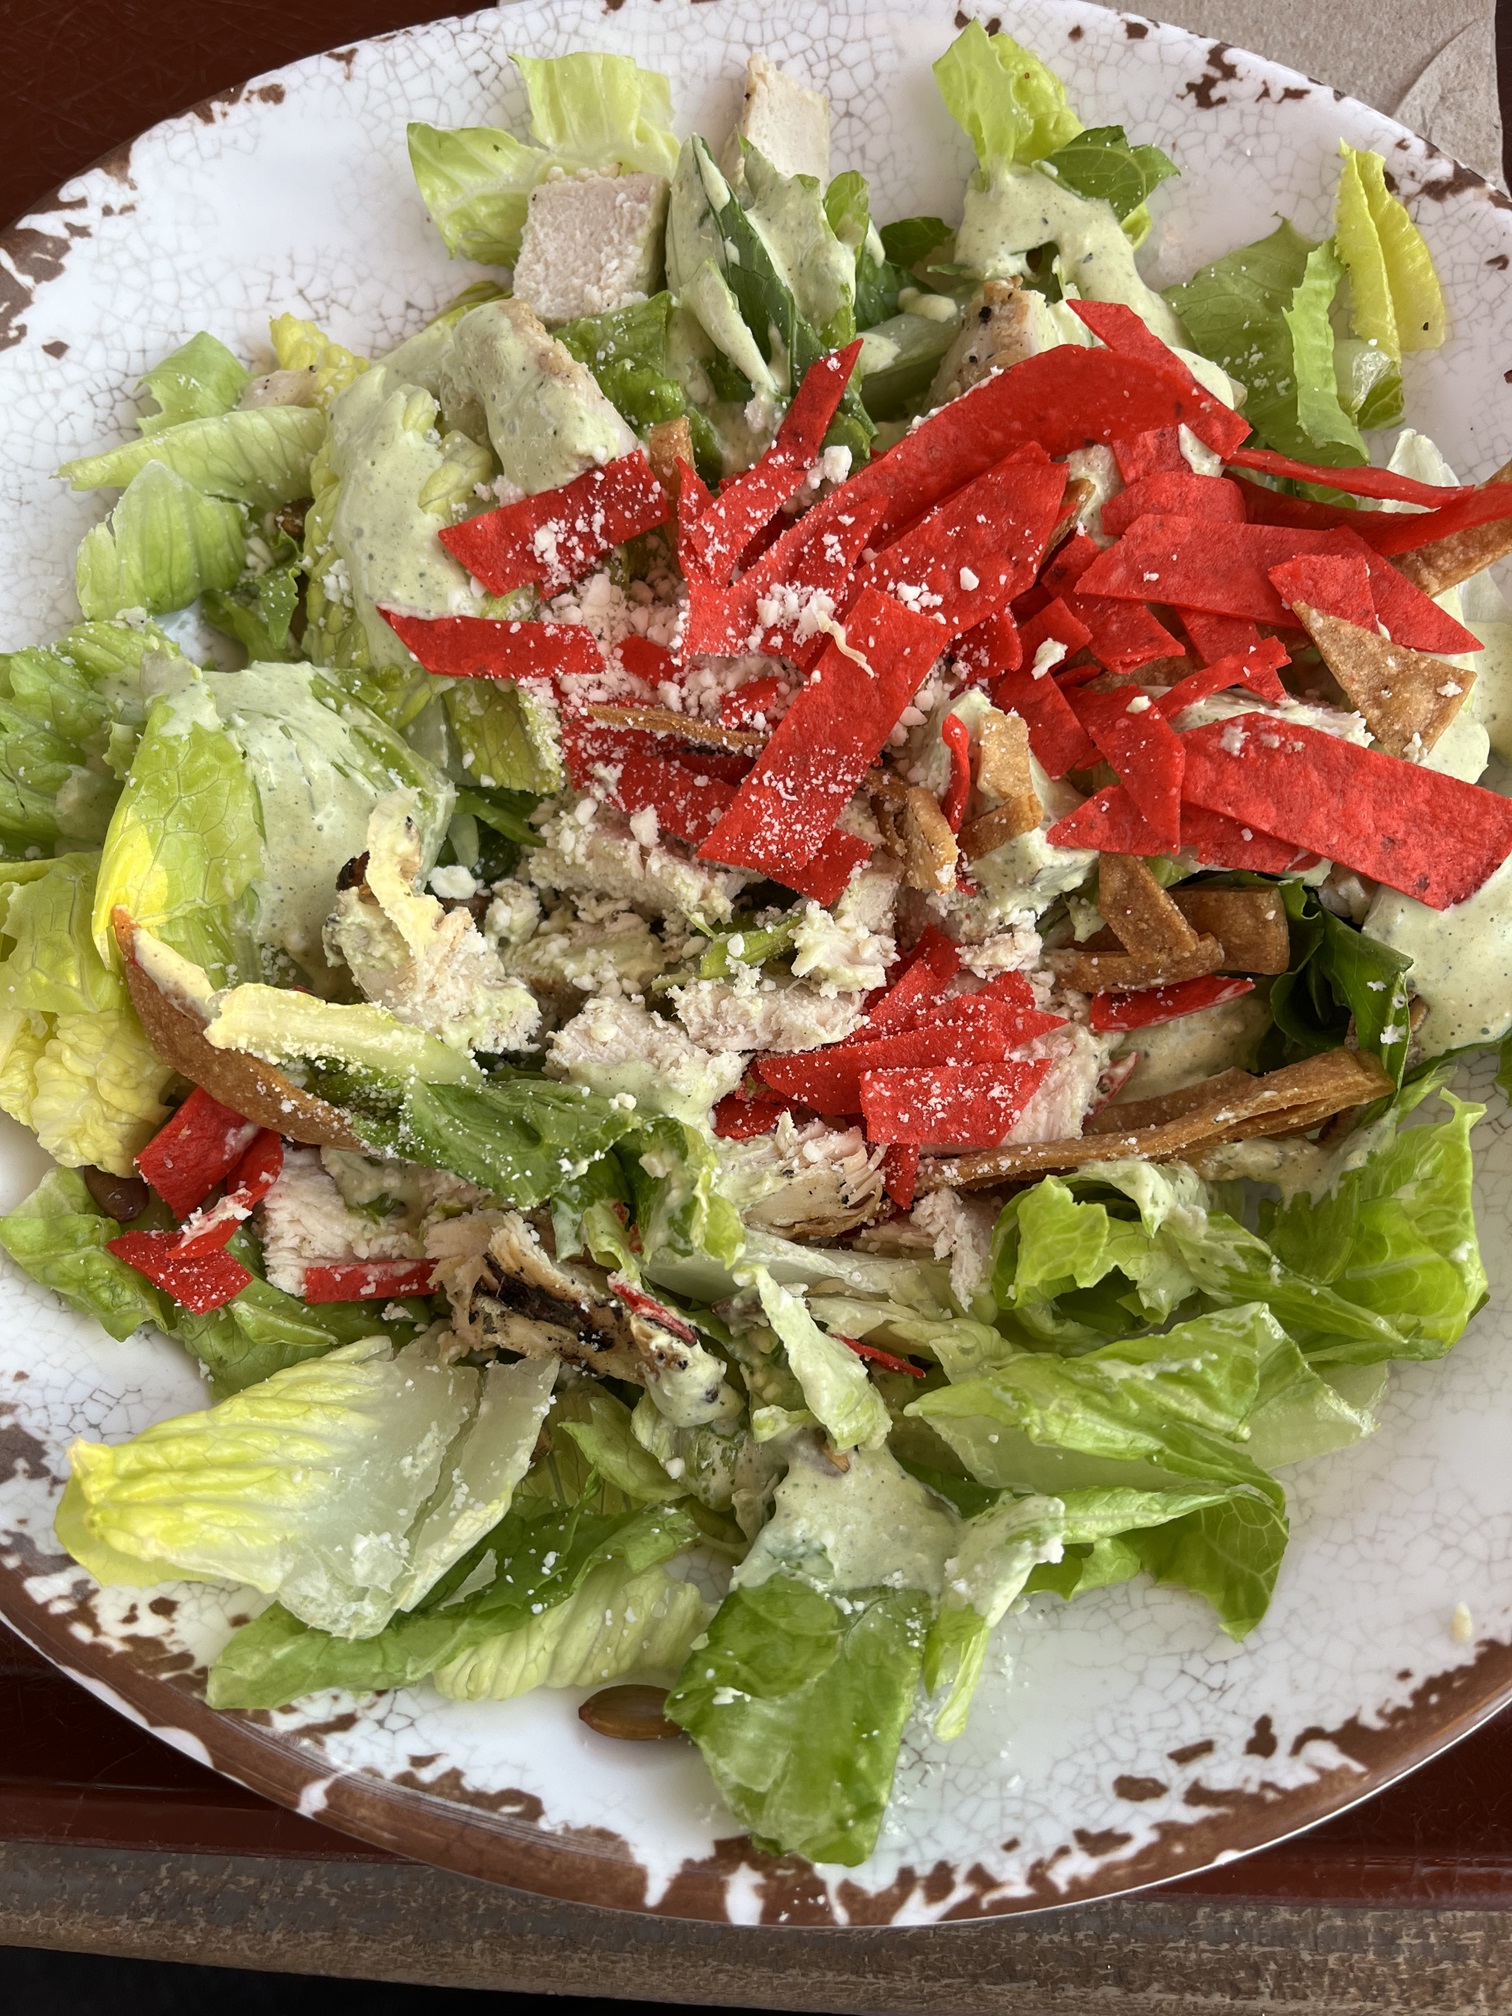 Rancho del Zocalo Restaurante Mexican Chicken Caesar Salad